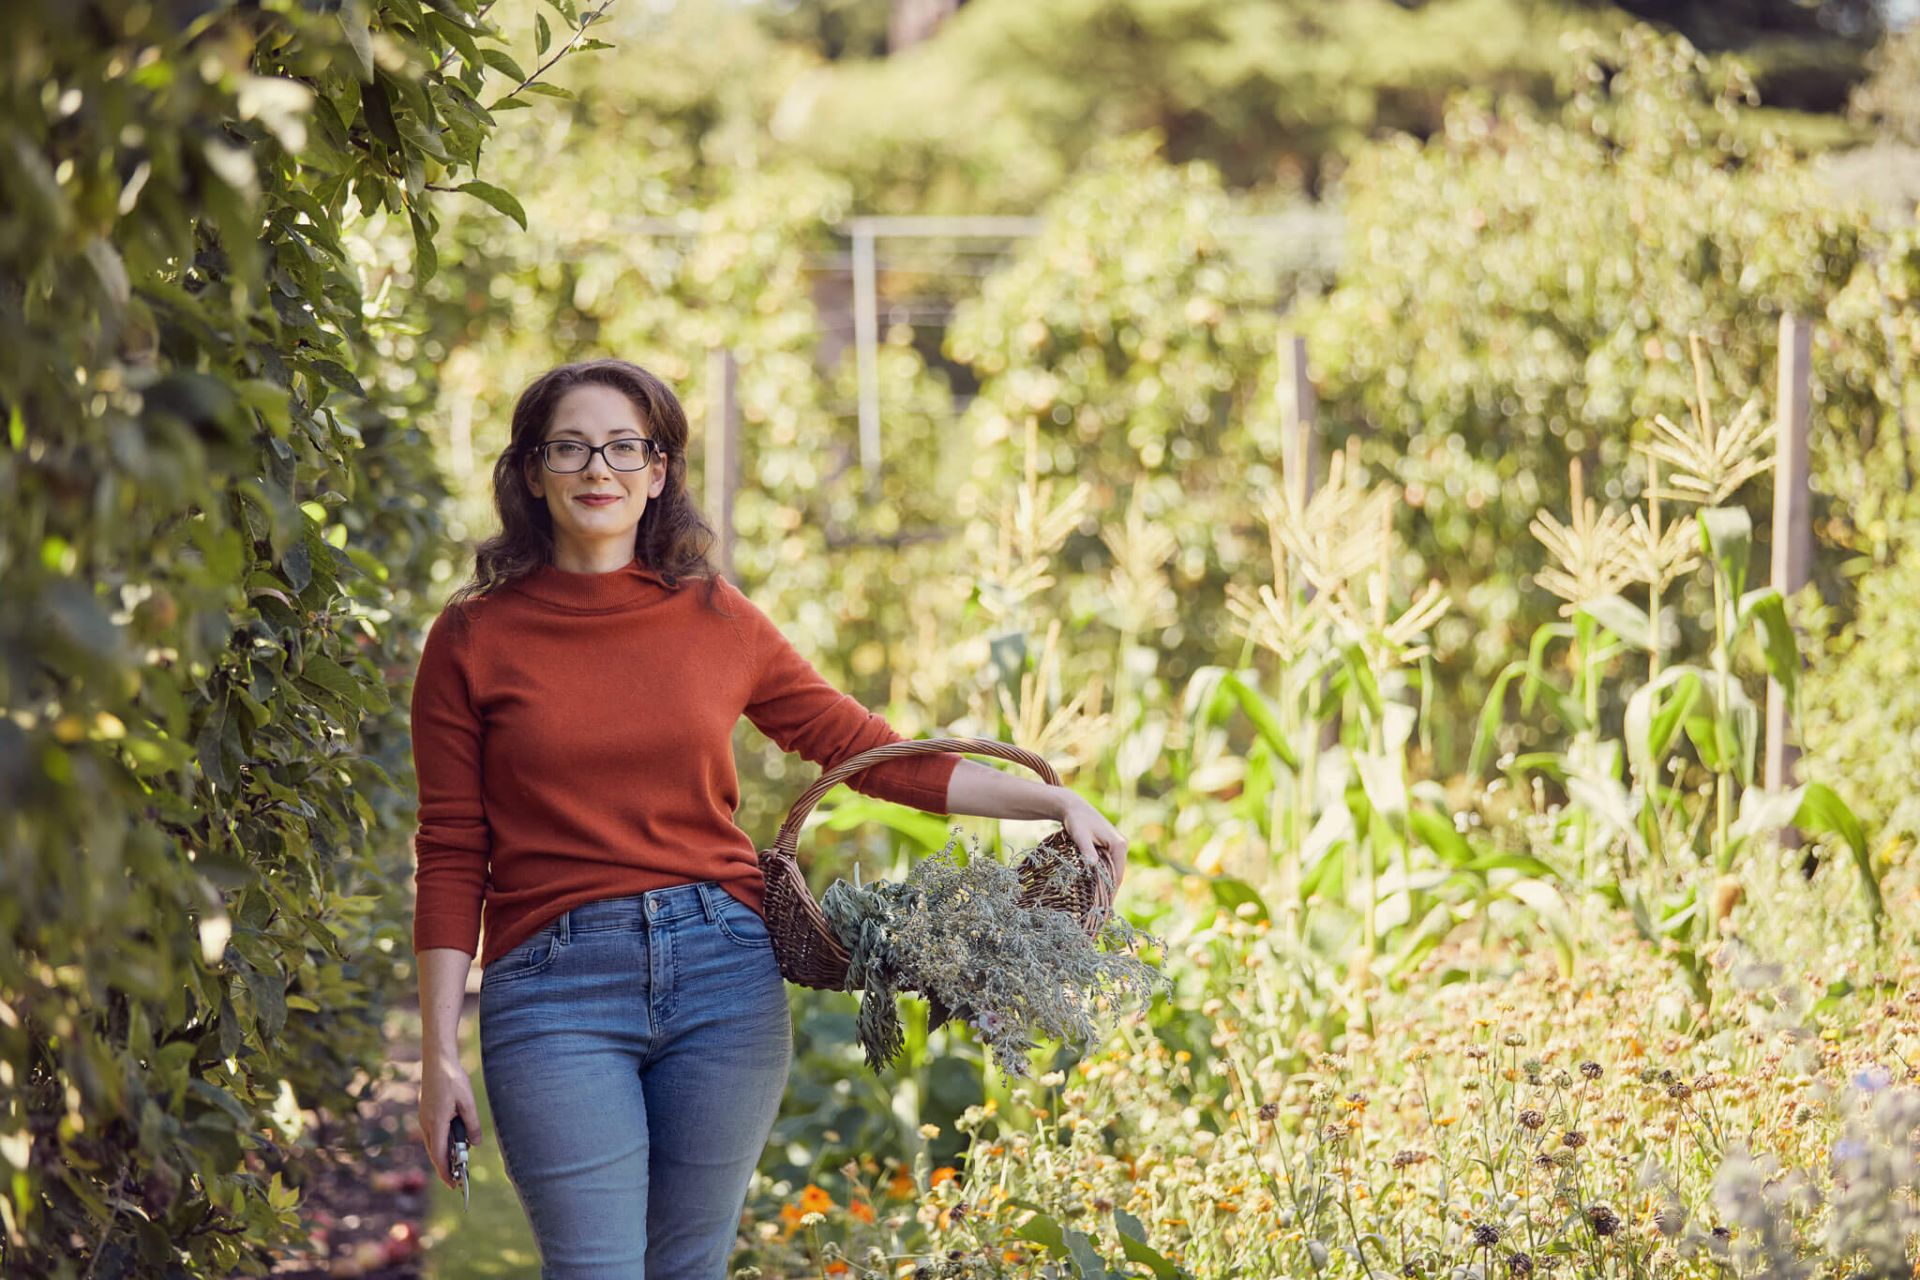 Meghan Rhodes, qualified herbalist in herb garden gathering herbs in basket for her herbalism school